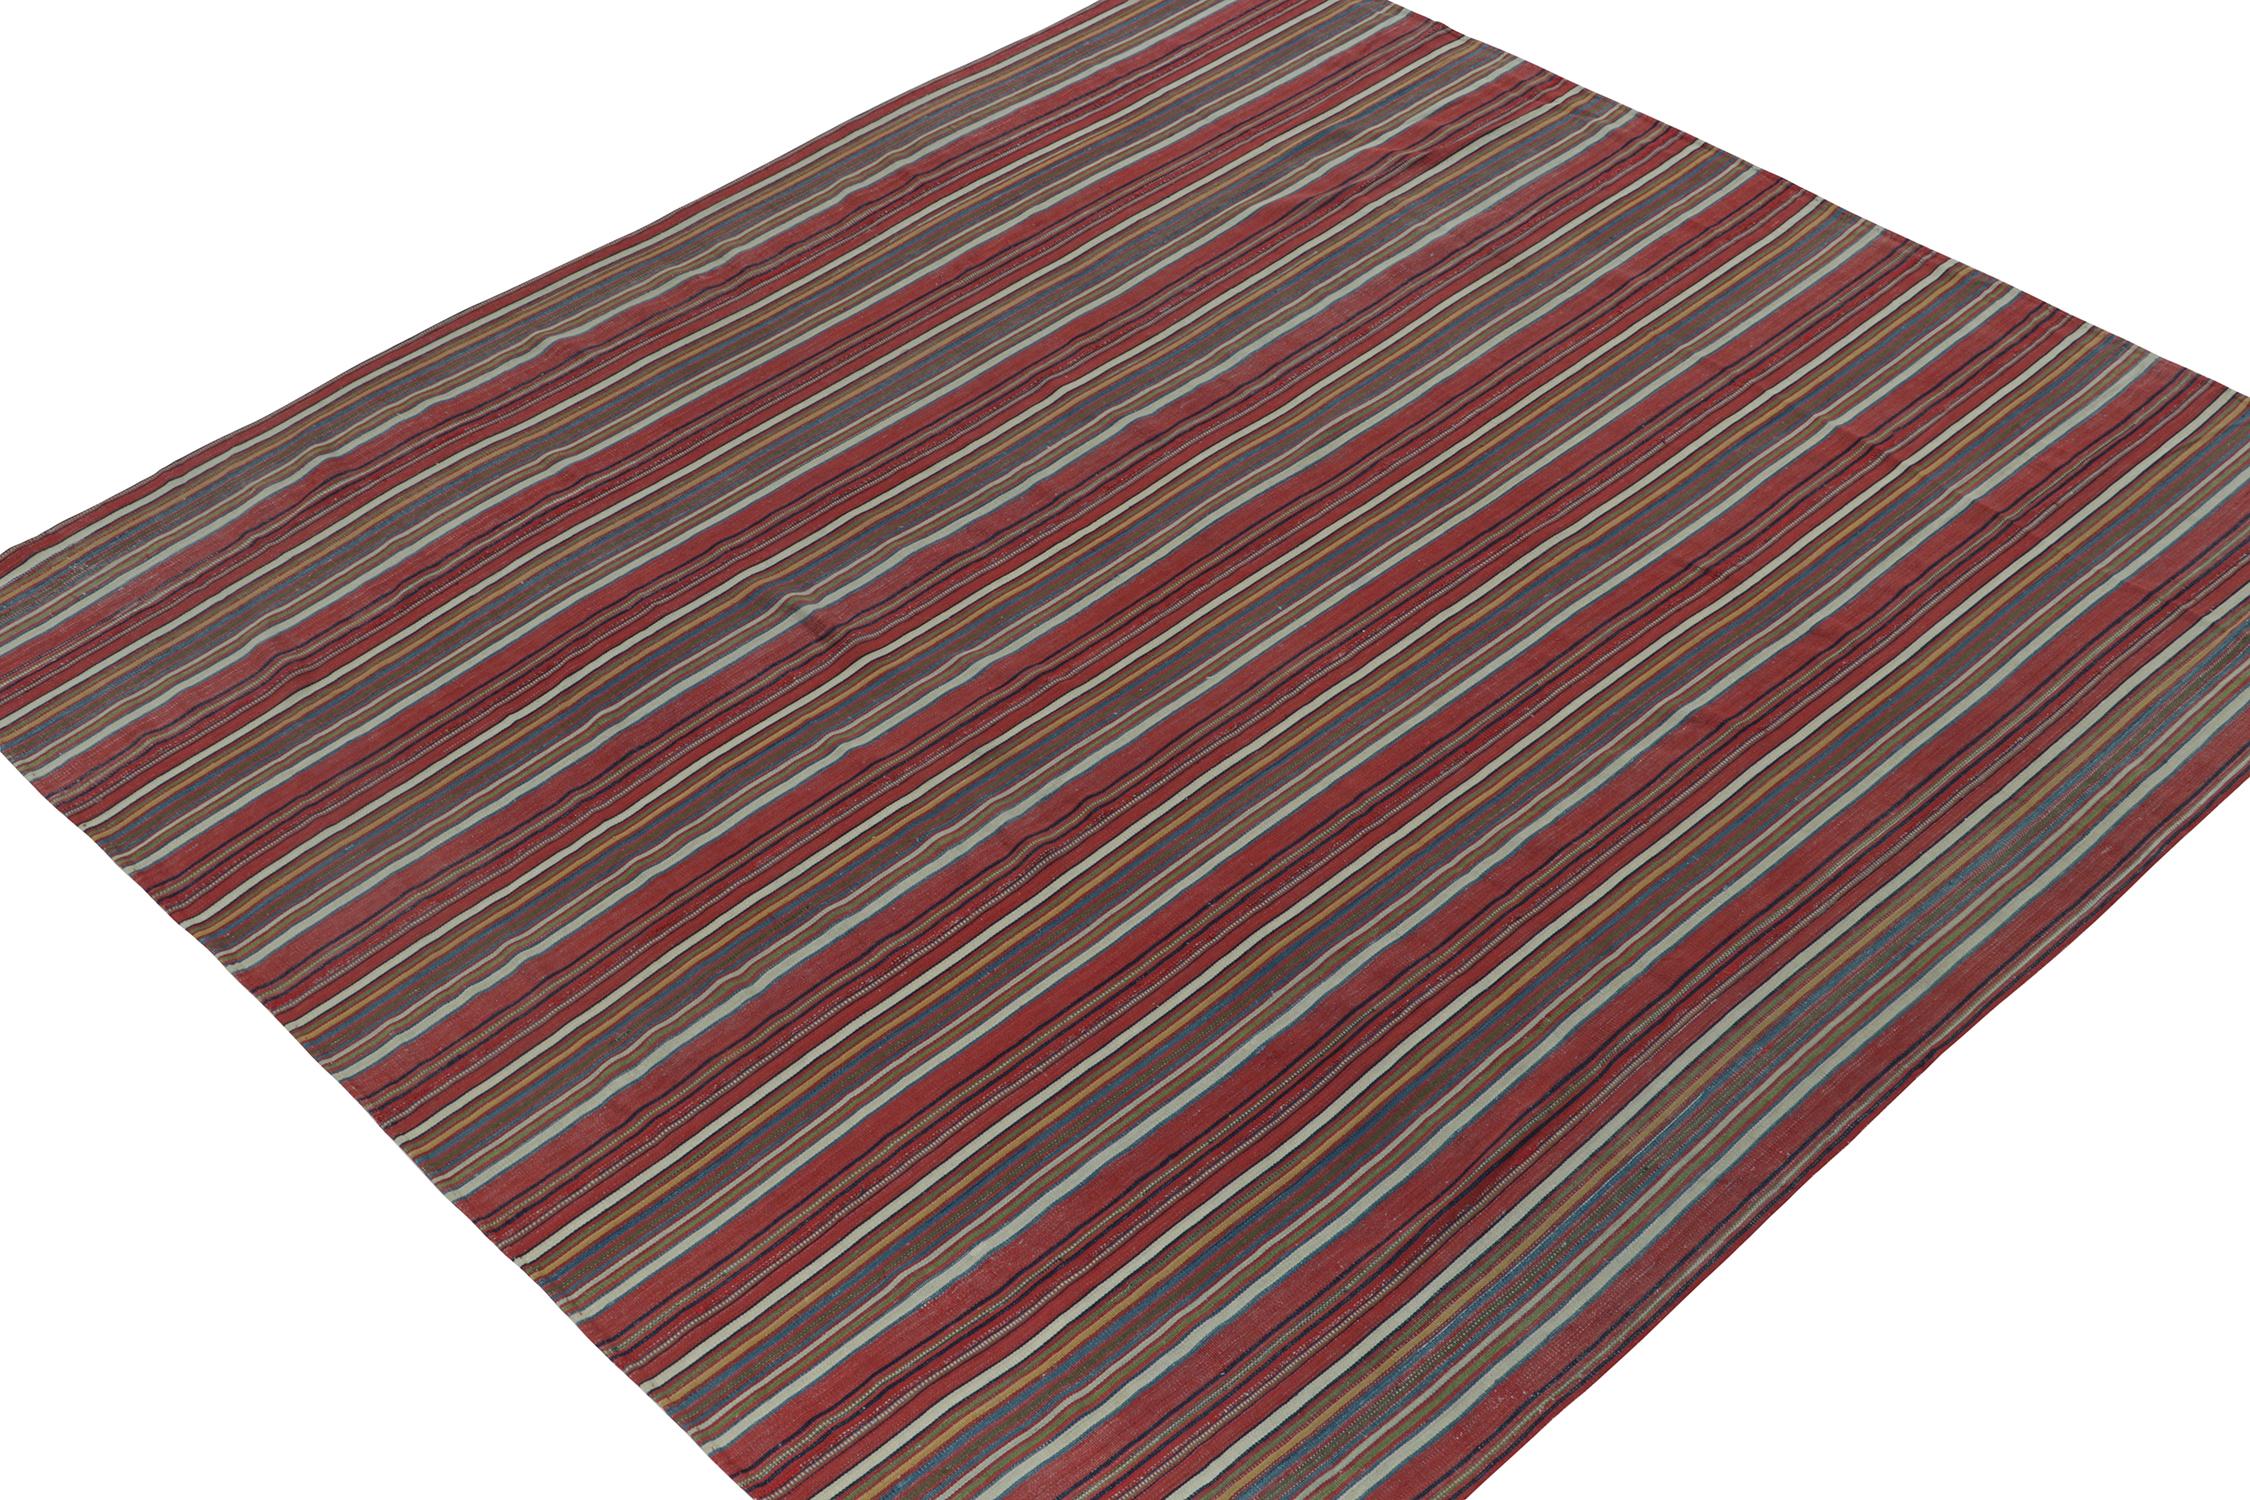 Dieser 8x8 große persische Kelim ist ein Stammes-Teppich im Paneel-Stil, handgewebt aus Wolle, ca. 1950-1960.

Weiter zum Design:

Das farbenfrohe Design bevorzugt ziegelrote Untertöne mit polychromen Streifen von leuchtender, skurriler Präsenz